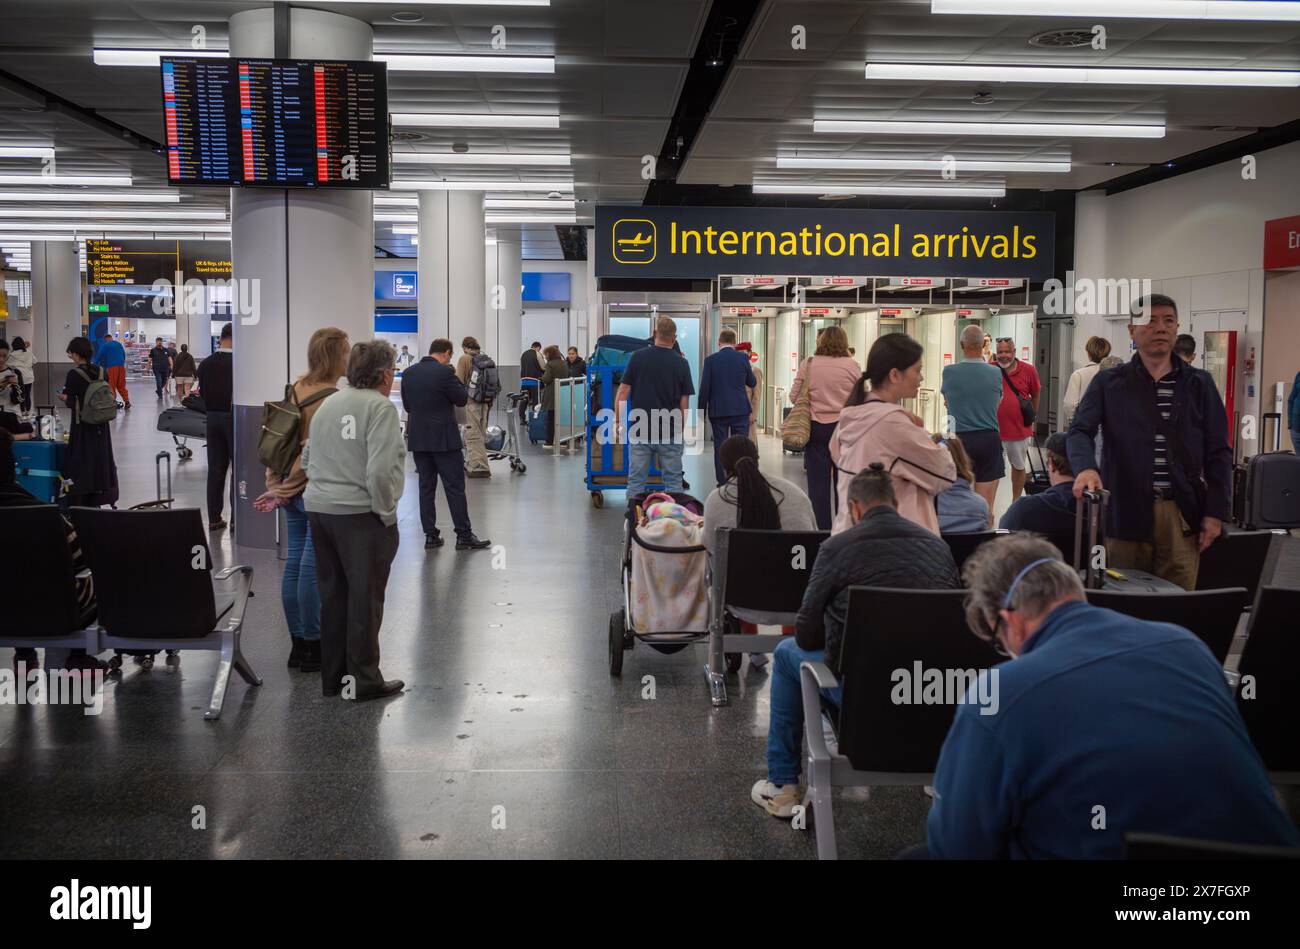 La gente aspetta che i passeggeri della compagnia aerea arrivino agli arrivi internazionali al London Gatwick Airport North Terminal, Regno Unito. Foto Stock